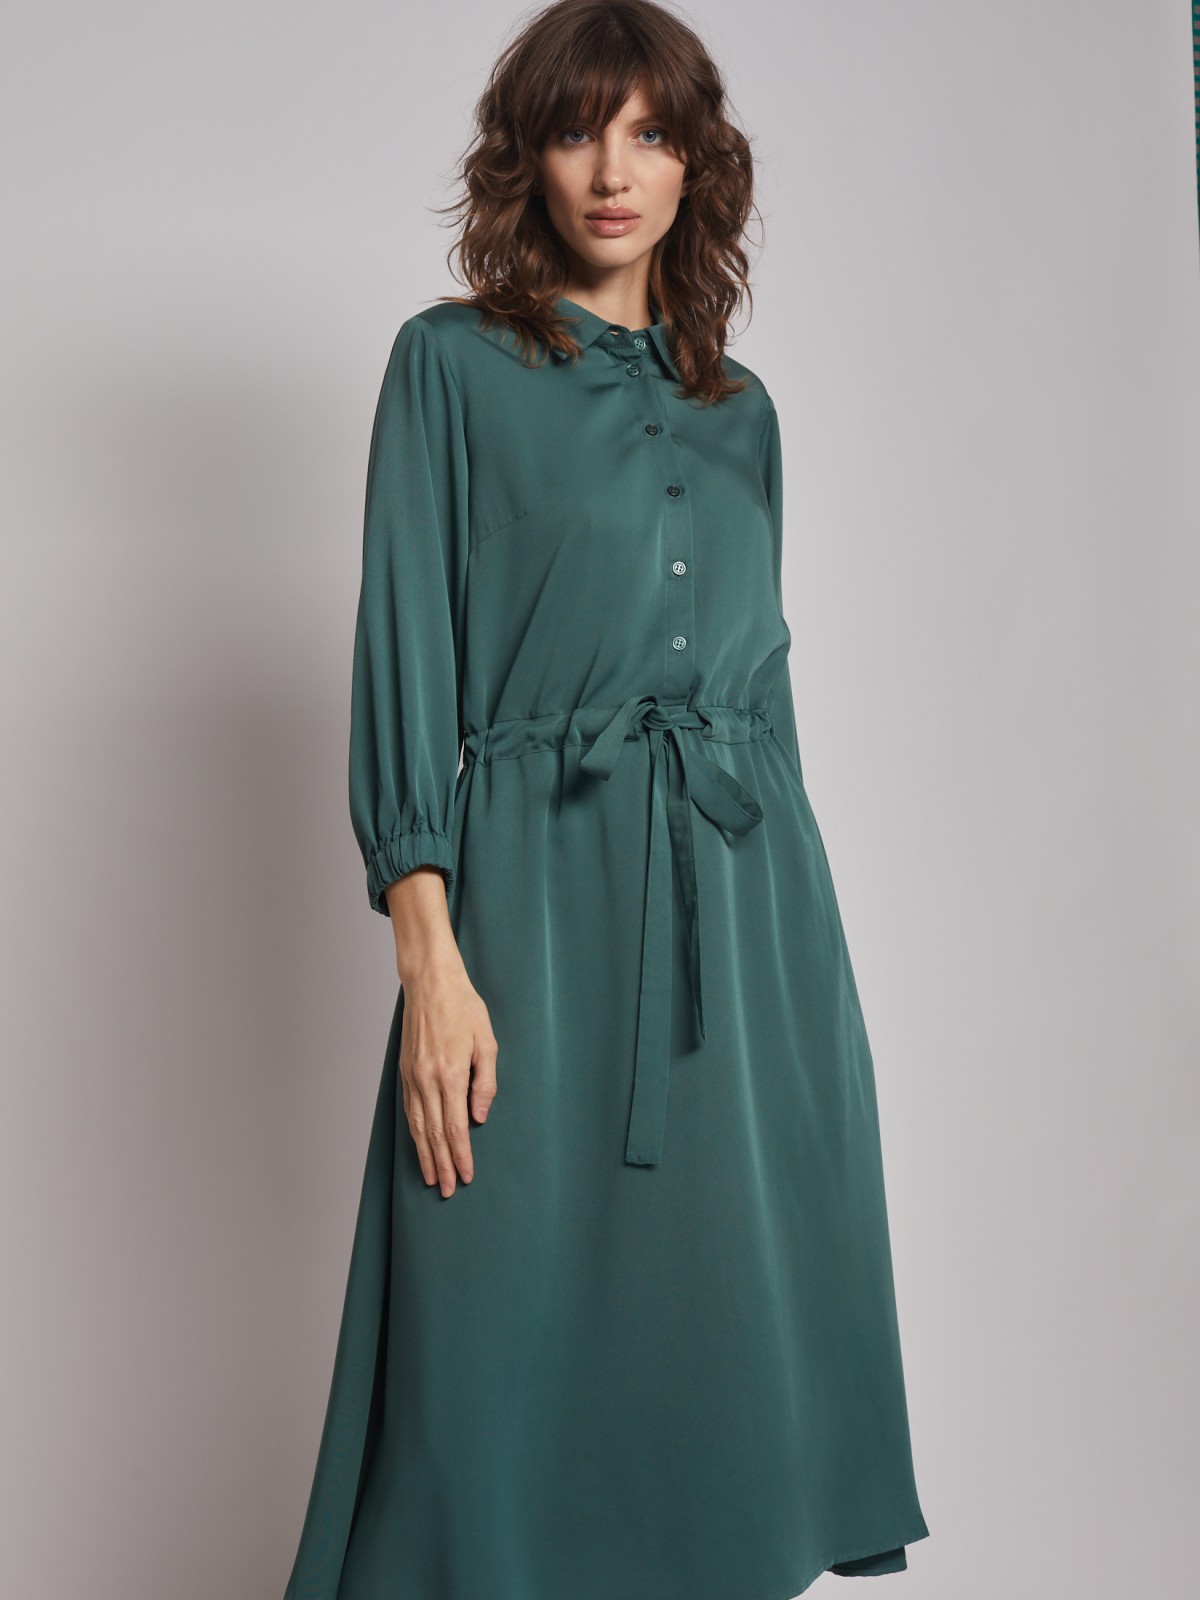 Платье-рубашка на кулиске zolla 222328239031, цвет темно-зеленый, размер S - фото 2